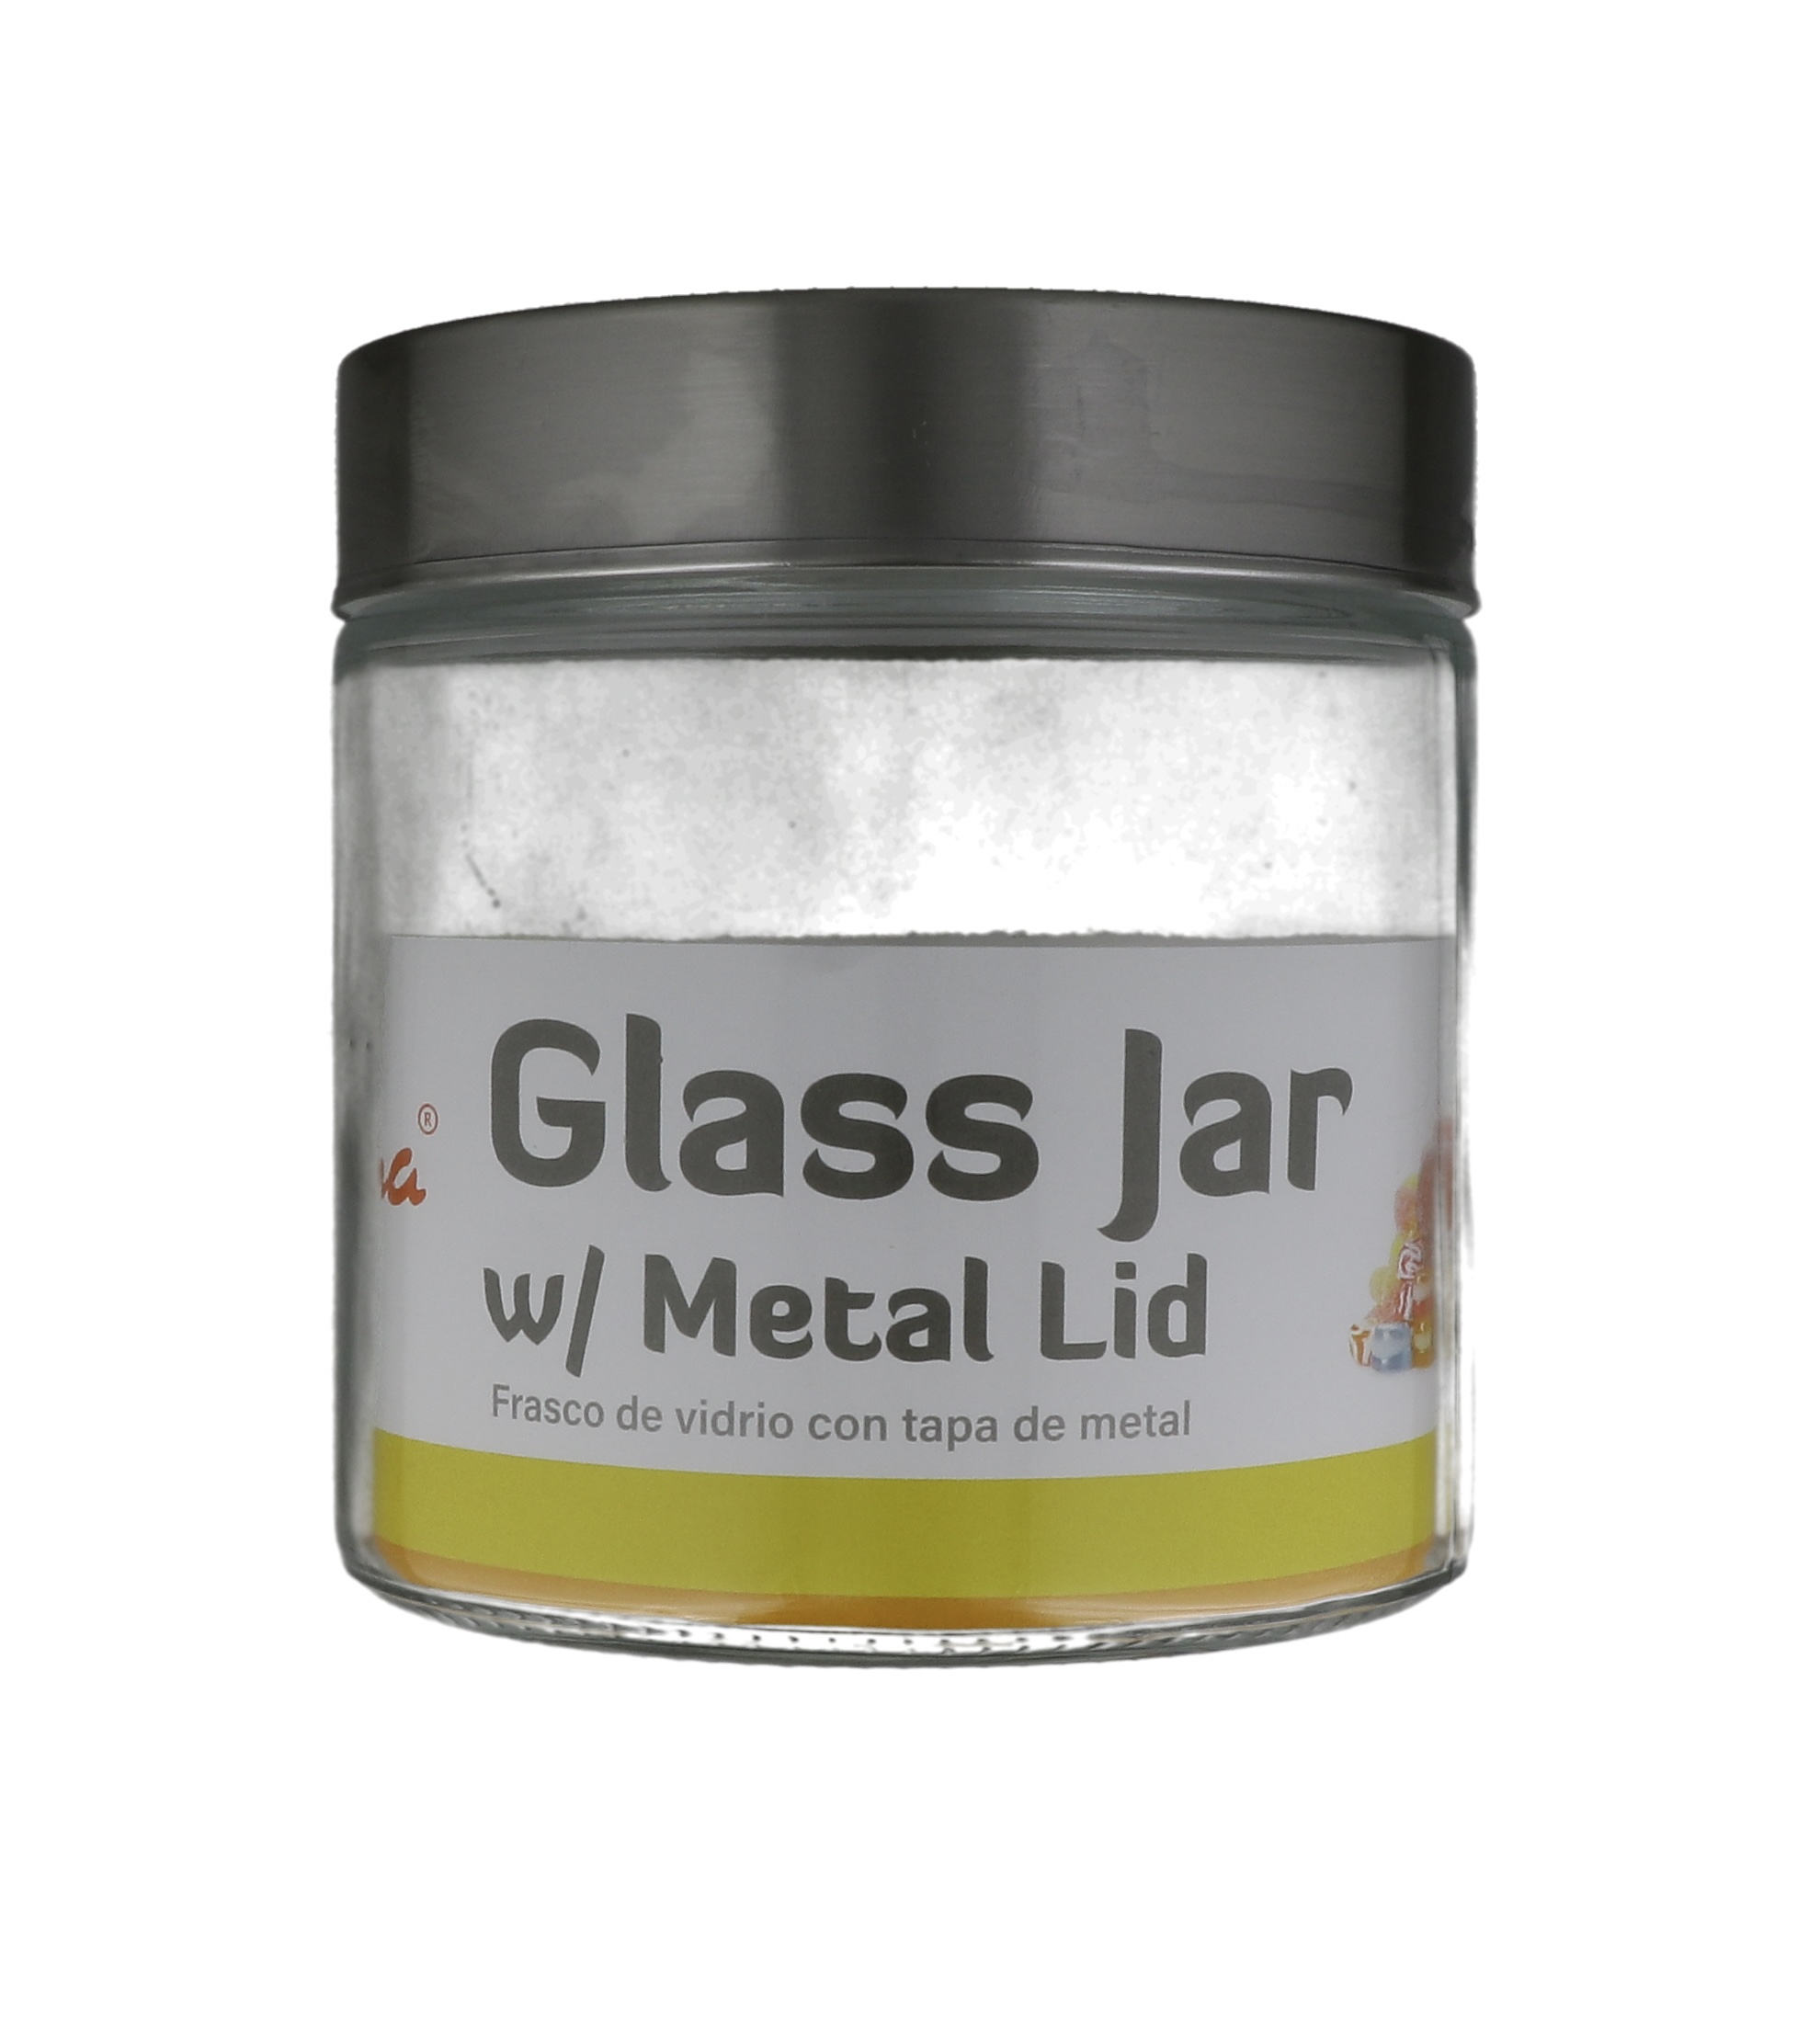 1.99 GLASS JAR 